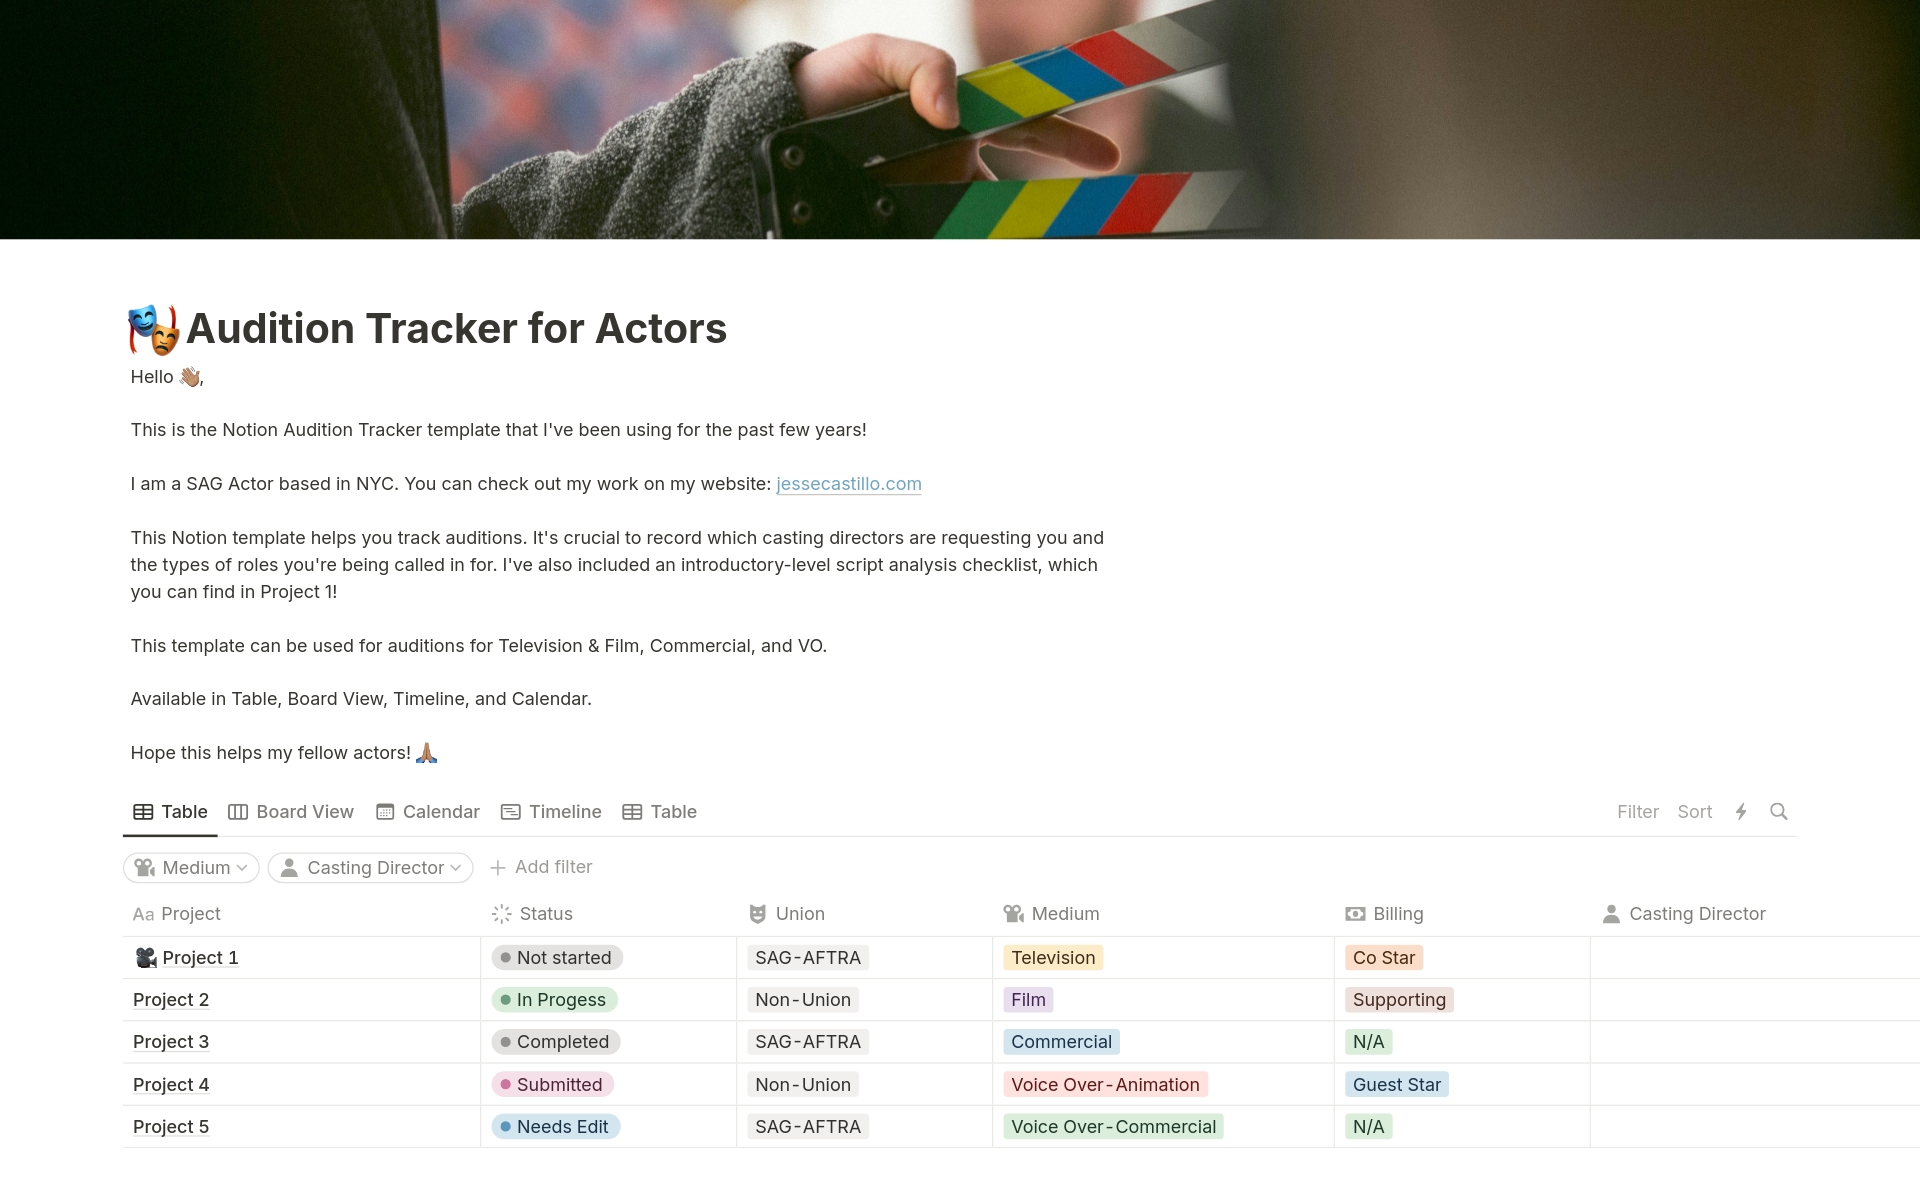 Uma prévia do modelo para Audition Tracker for Actors